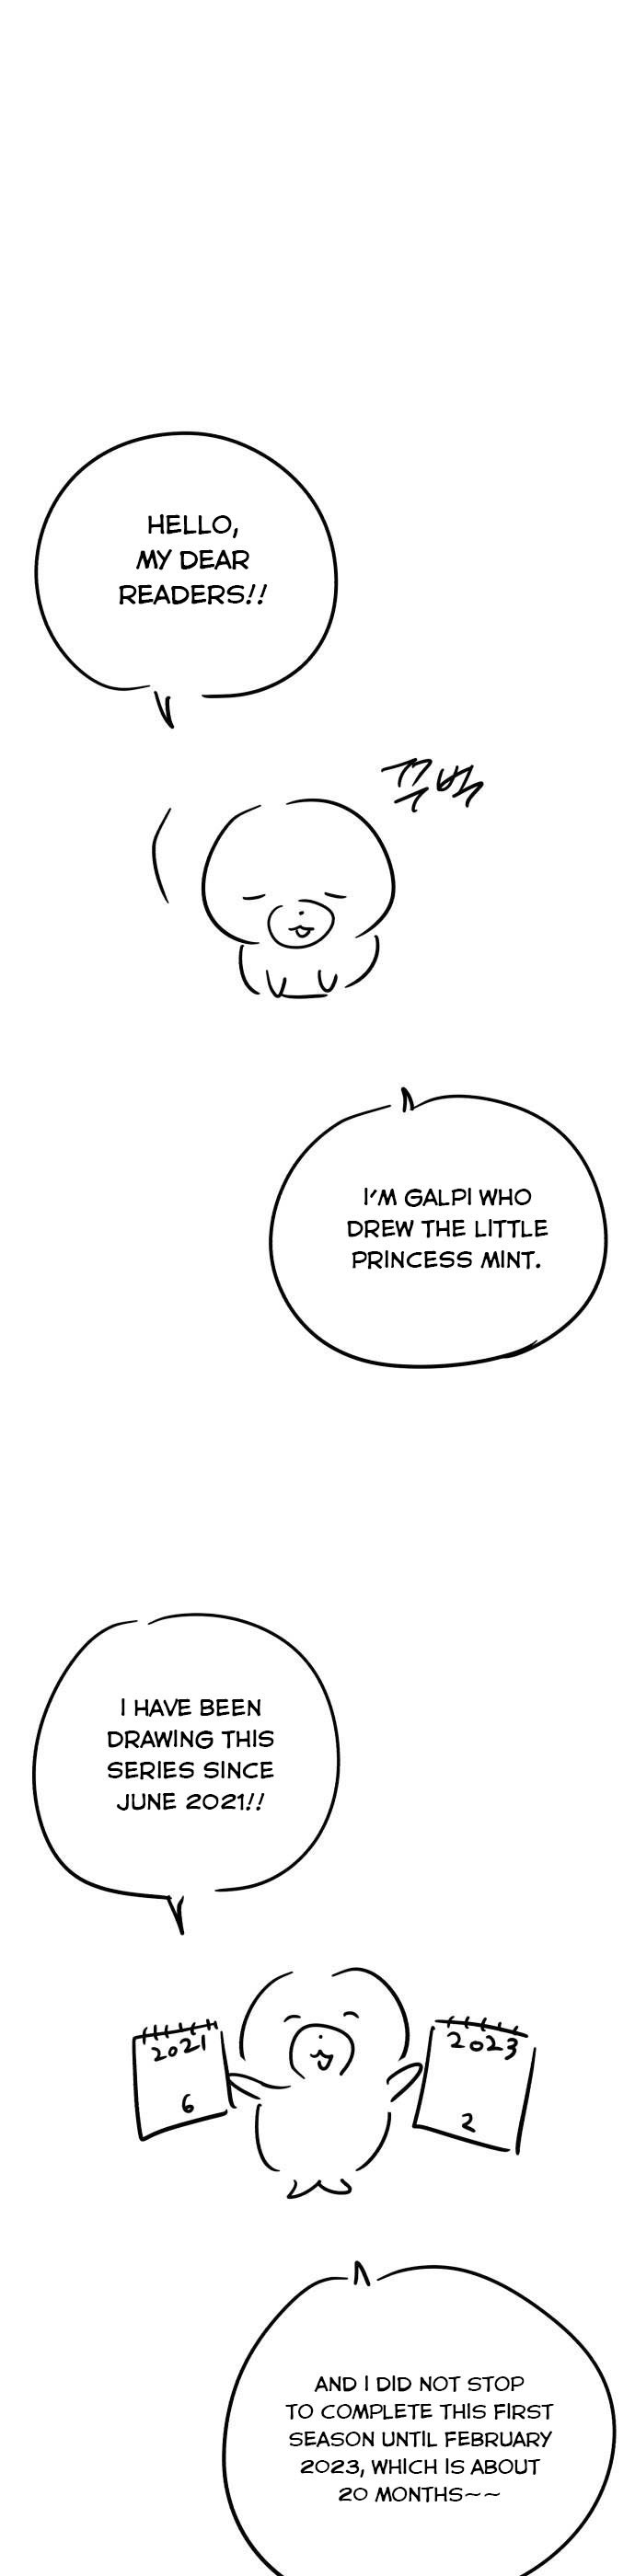 Little Princess Mint - Page 3